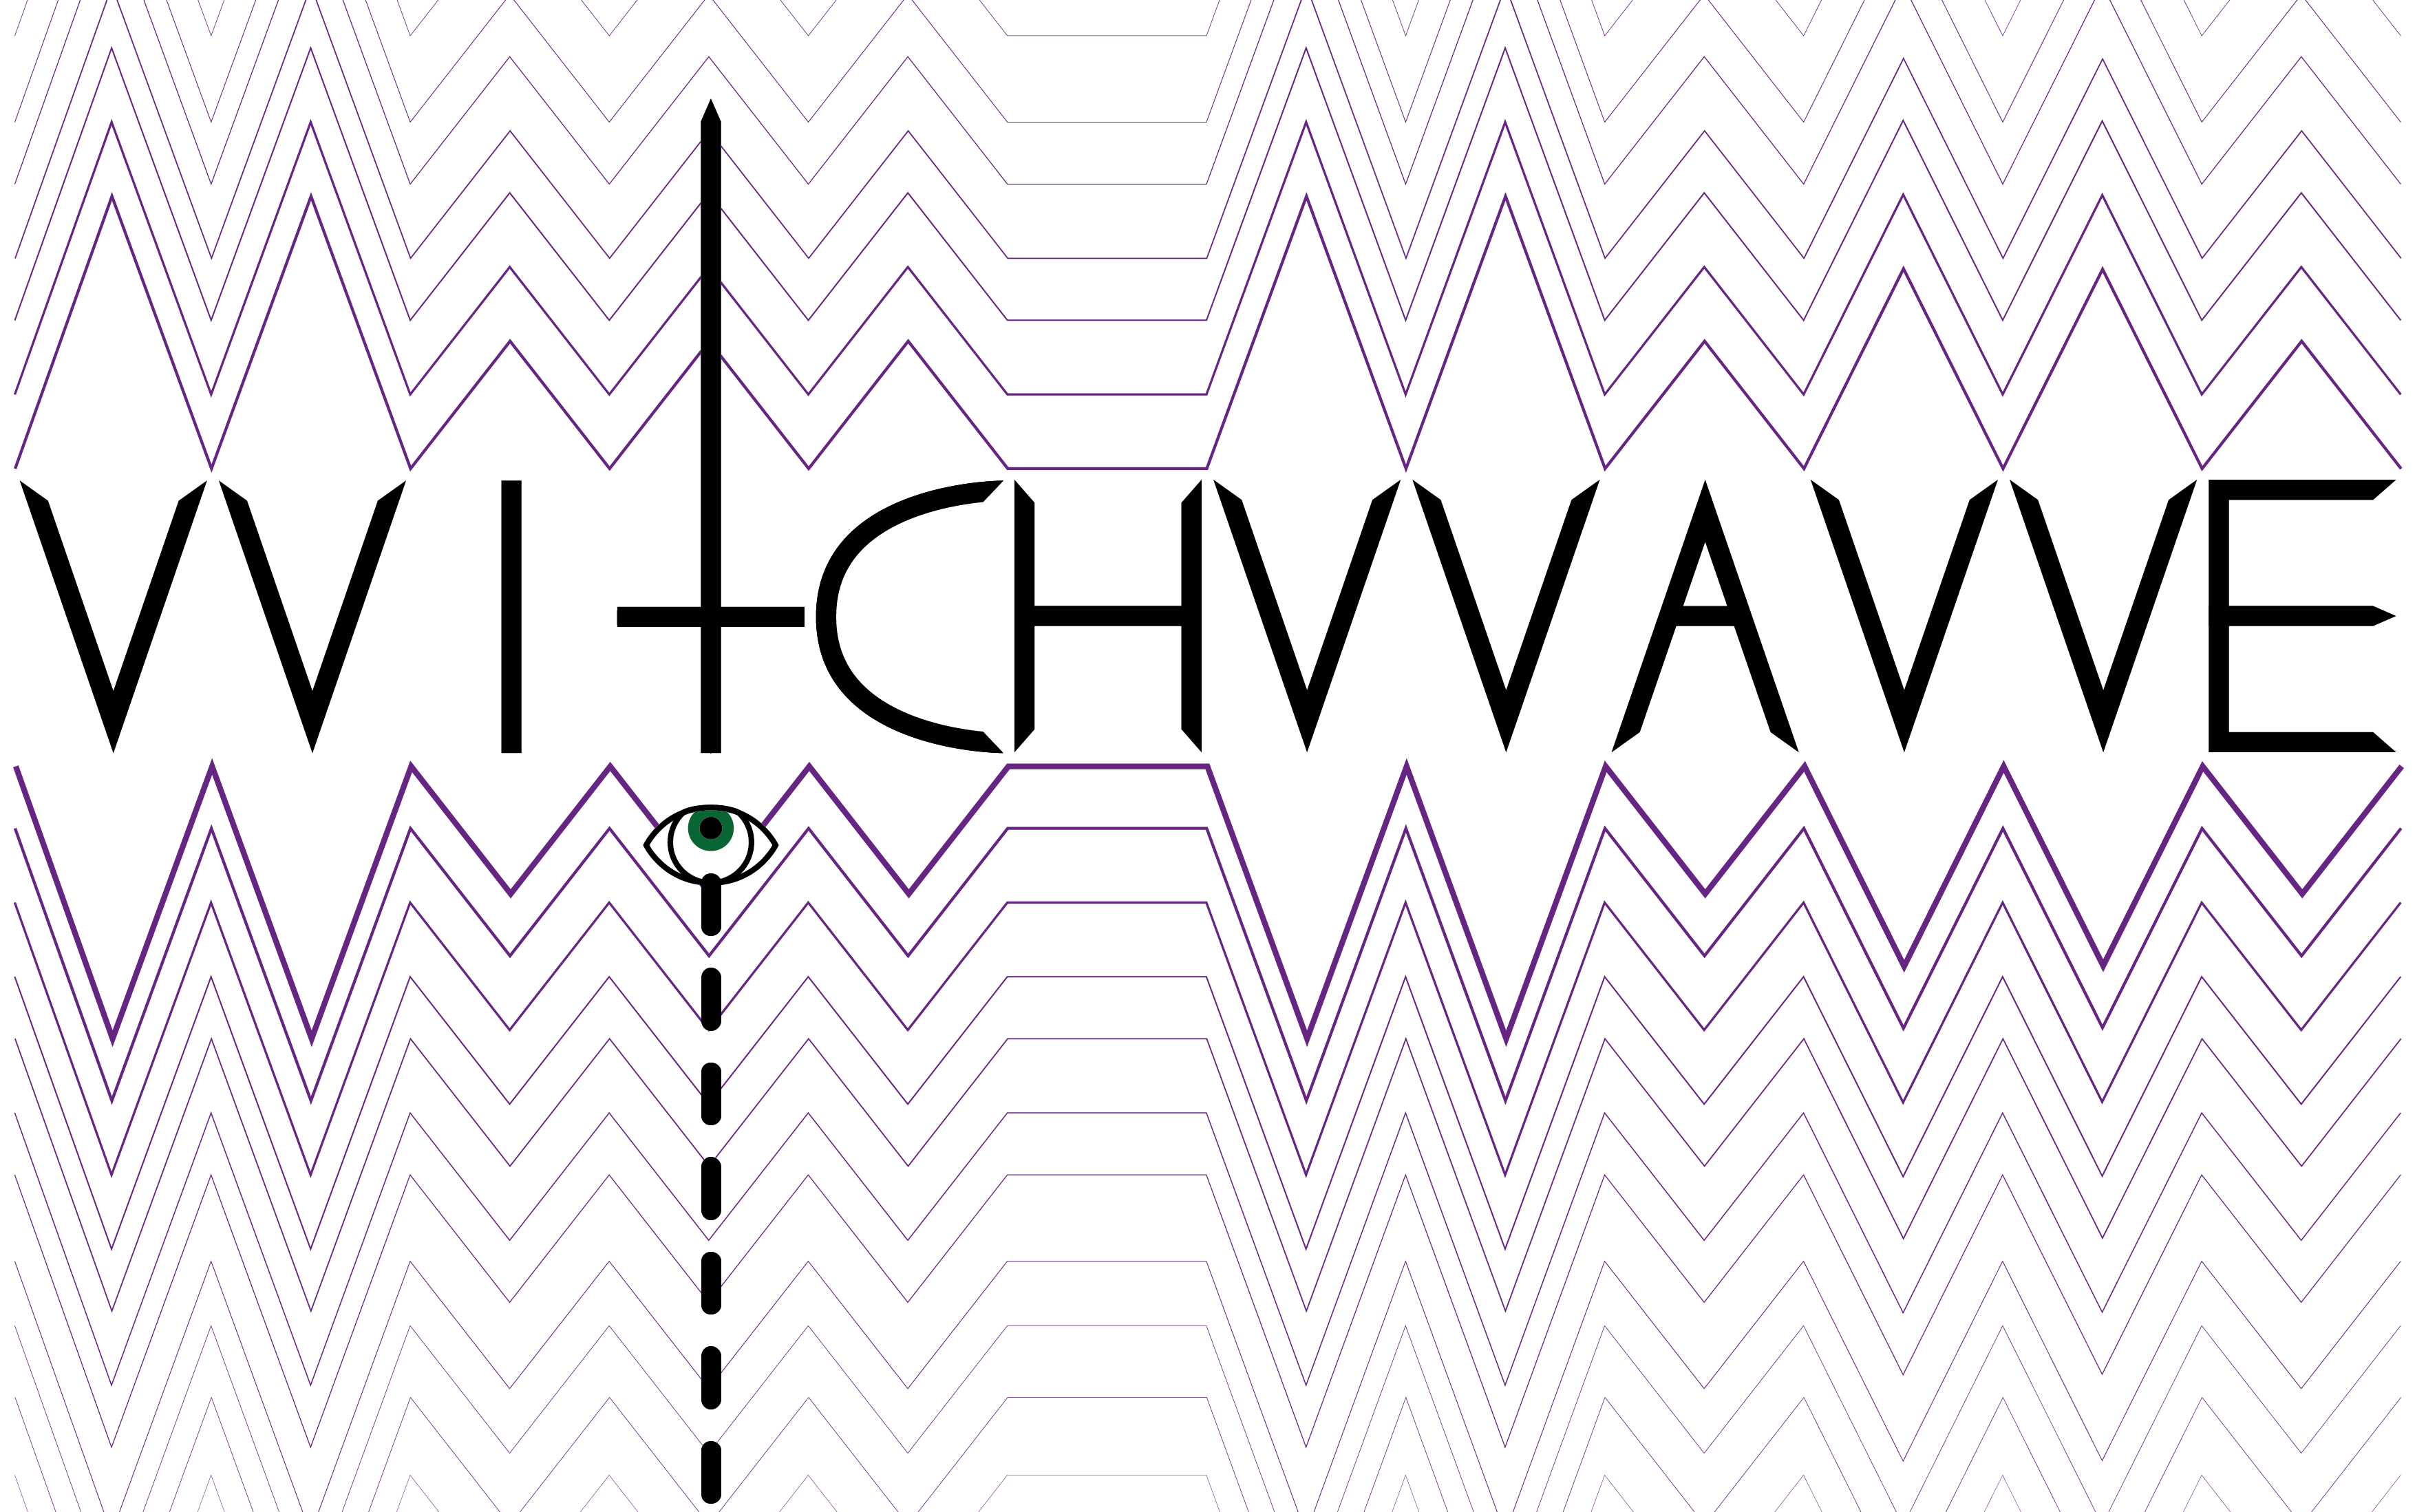 Image 01: VVitchVVavvve logo. Image: Tom Penney.